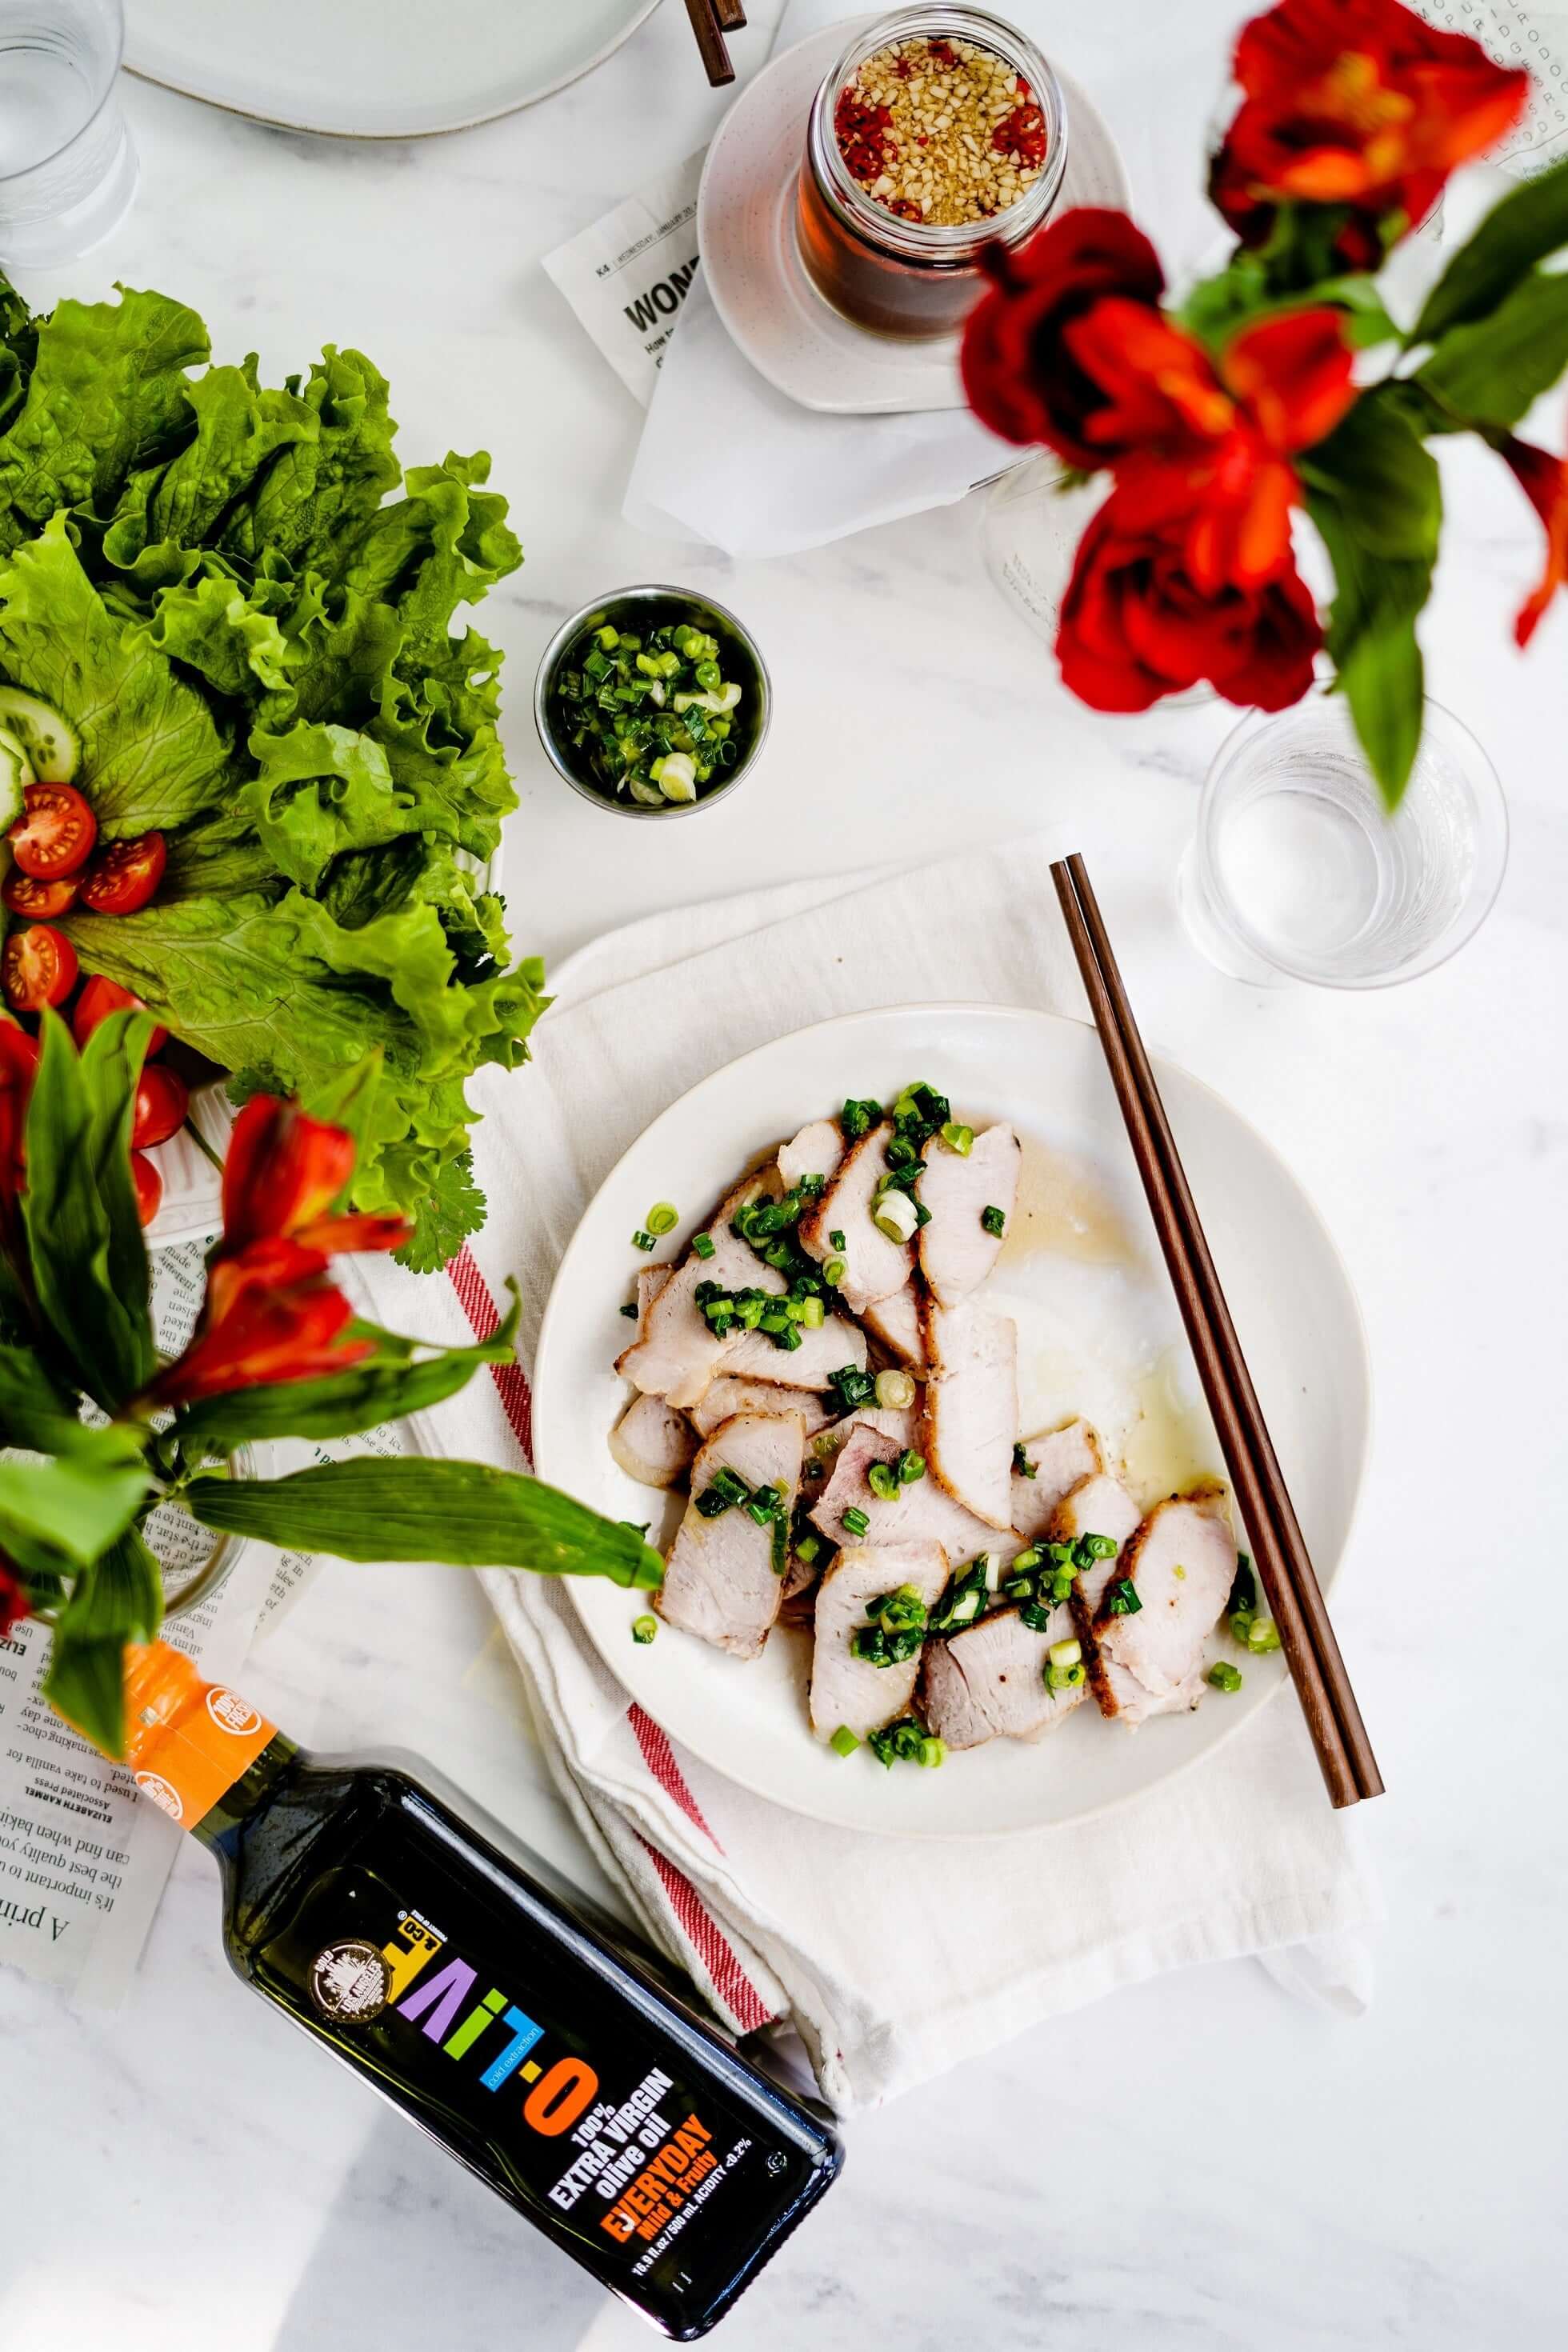 Un plato con chuletas de cerdo vietnamitas junto a dos floreros, una fuente con verduras y una botella de aceite de oliva O-Live & Co.